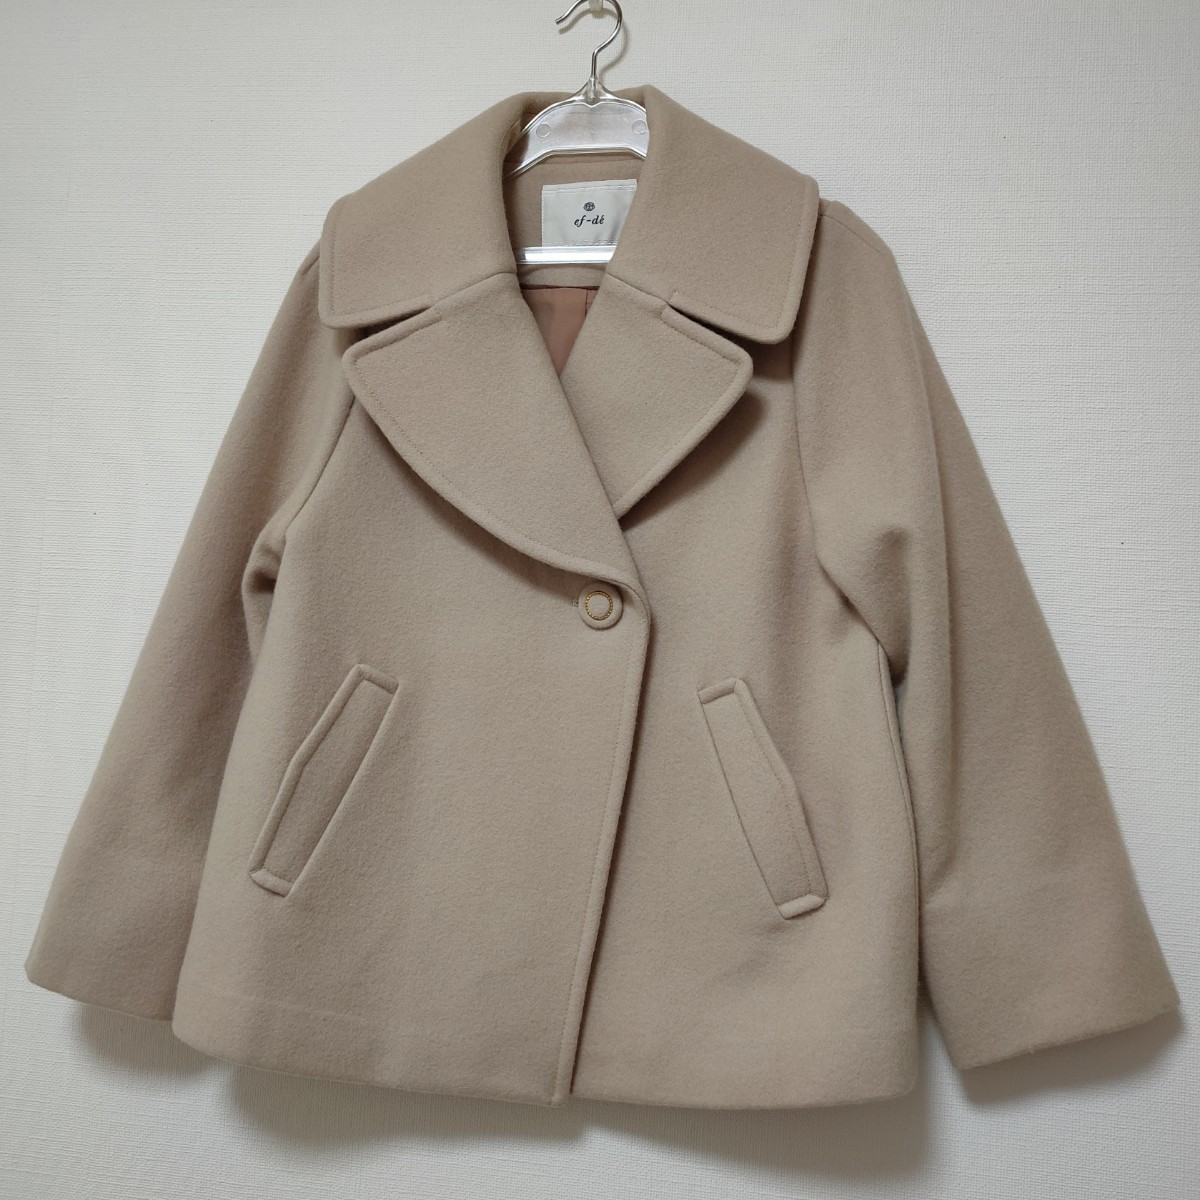  unused ef-de ef-de A line tailored coat pink beige wool Blend 7 number coat pea coat 